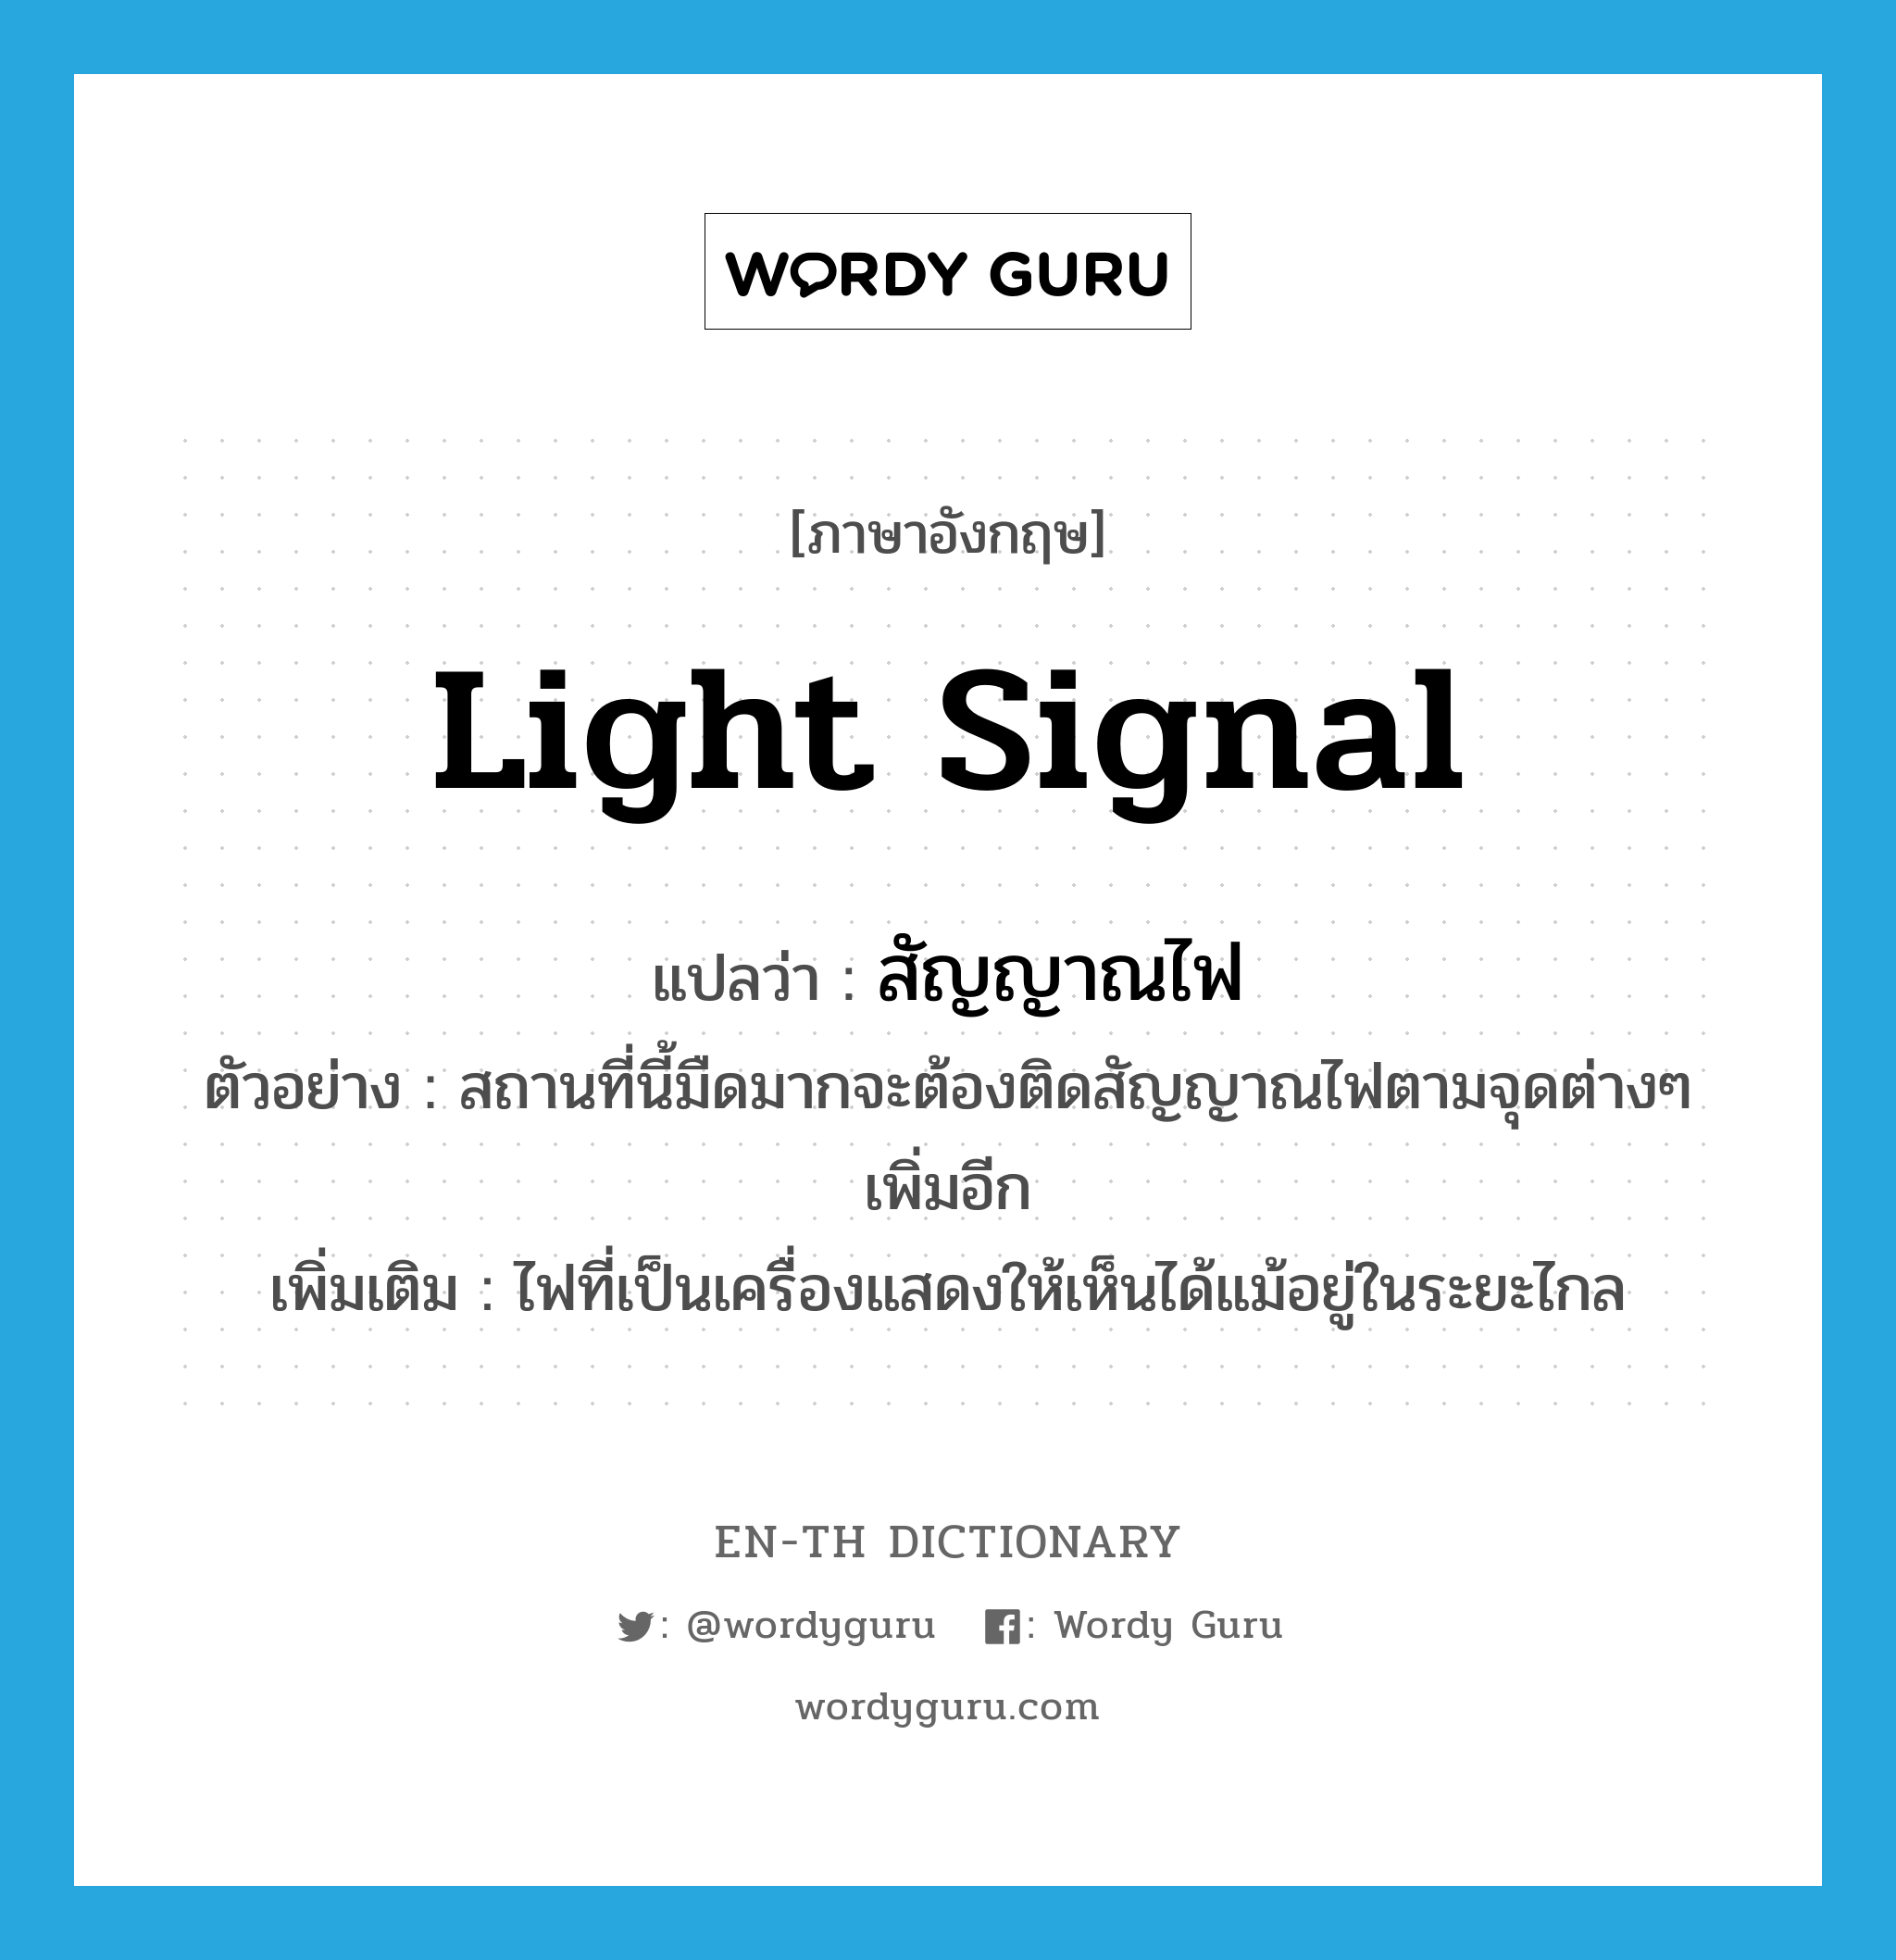 light signal แปลว่า?, คำศัพท์ภาษาอังกฤษ light signal แปลว่า สัญญาณไฟ ประเภท N ตัวอย่าง สถานที่นี้มืดมากจะต้องติดสัญญาณไฟตามจุดต่างๆ เพิ่มอีก เพิ่มเติม ไฟที่เป็นเครื่องแสดงให้เห็นได้แม้อยู่ในระยะไกล หมวด N